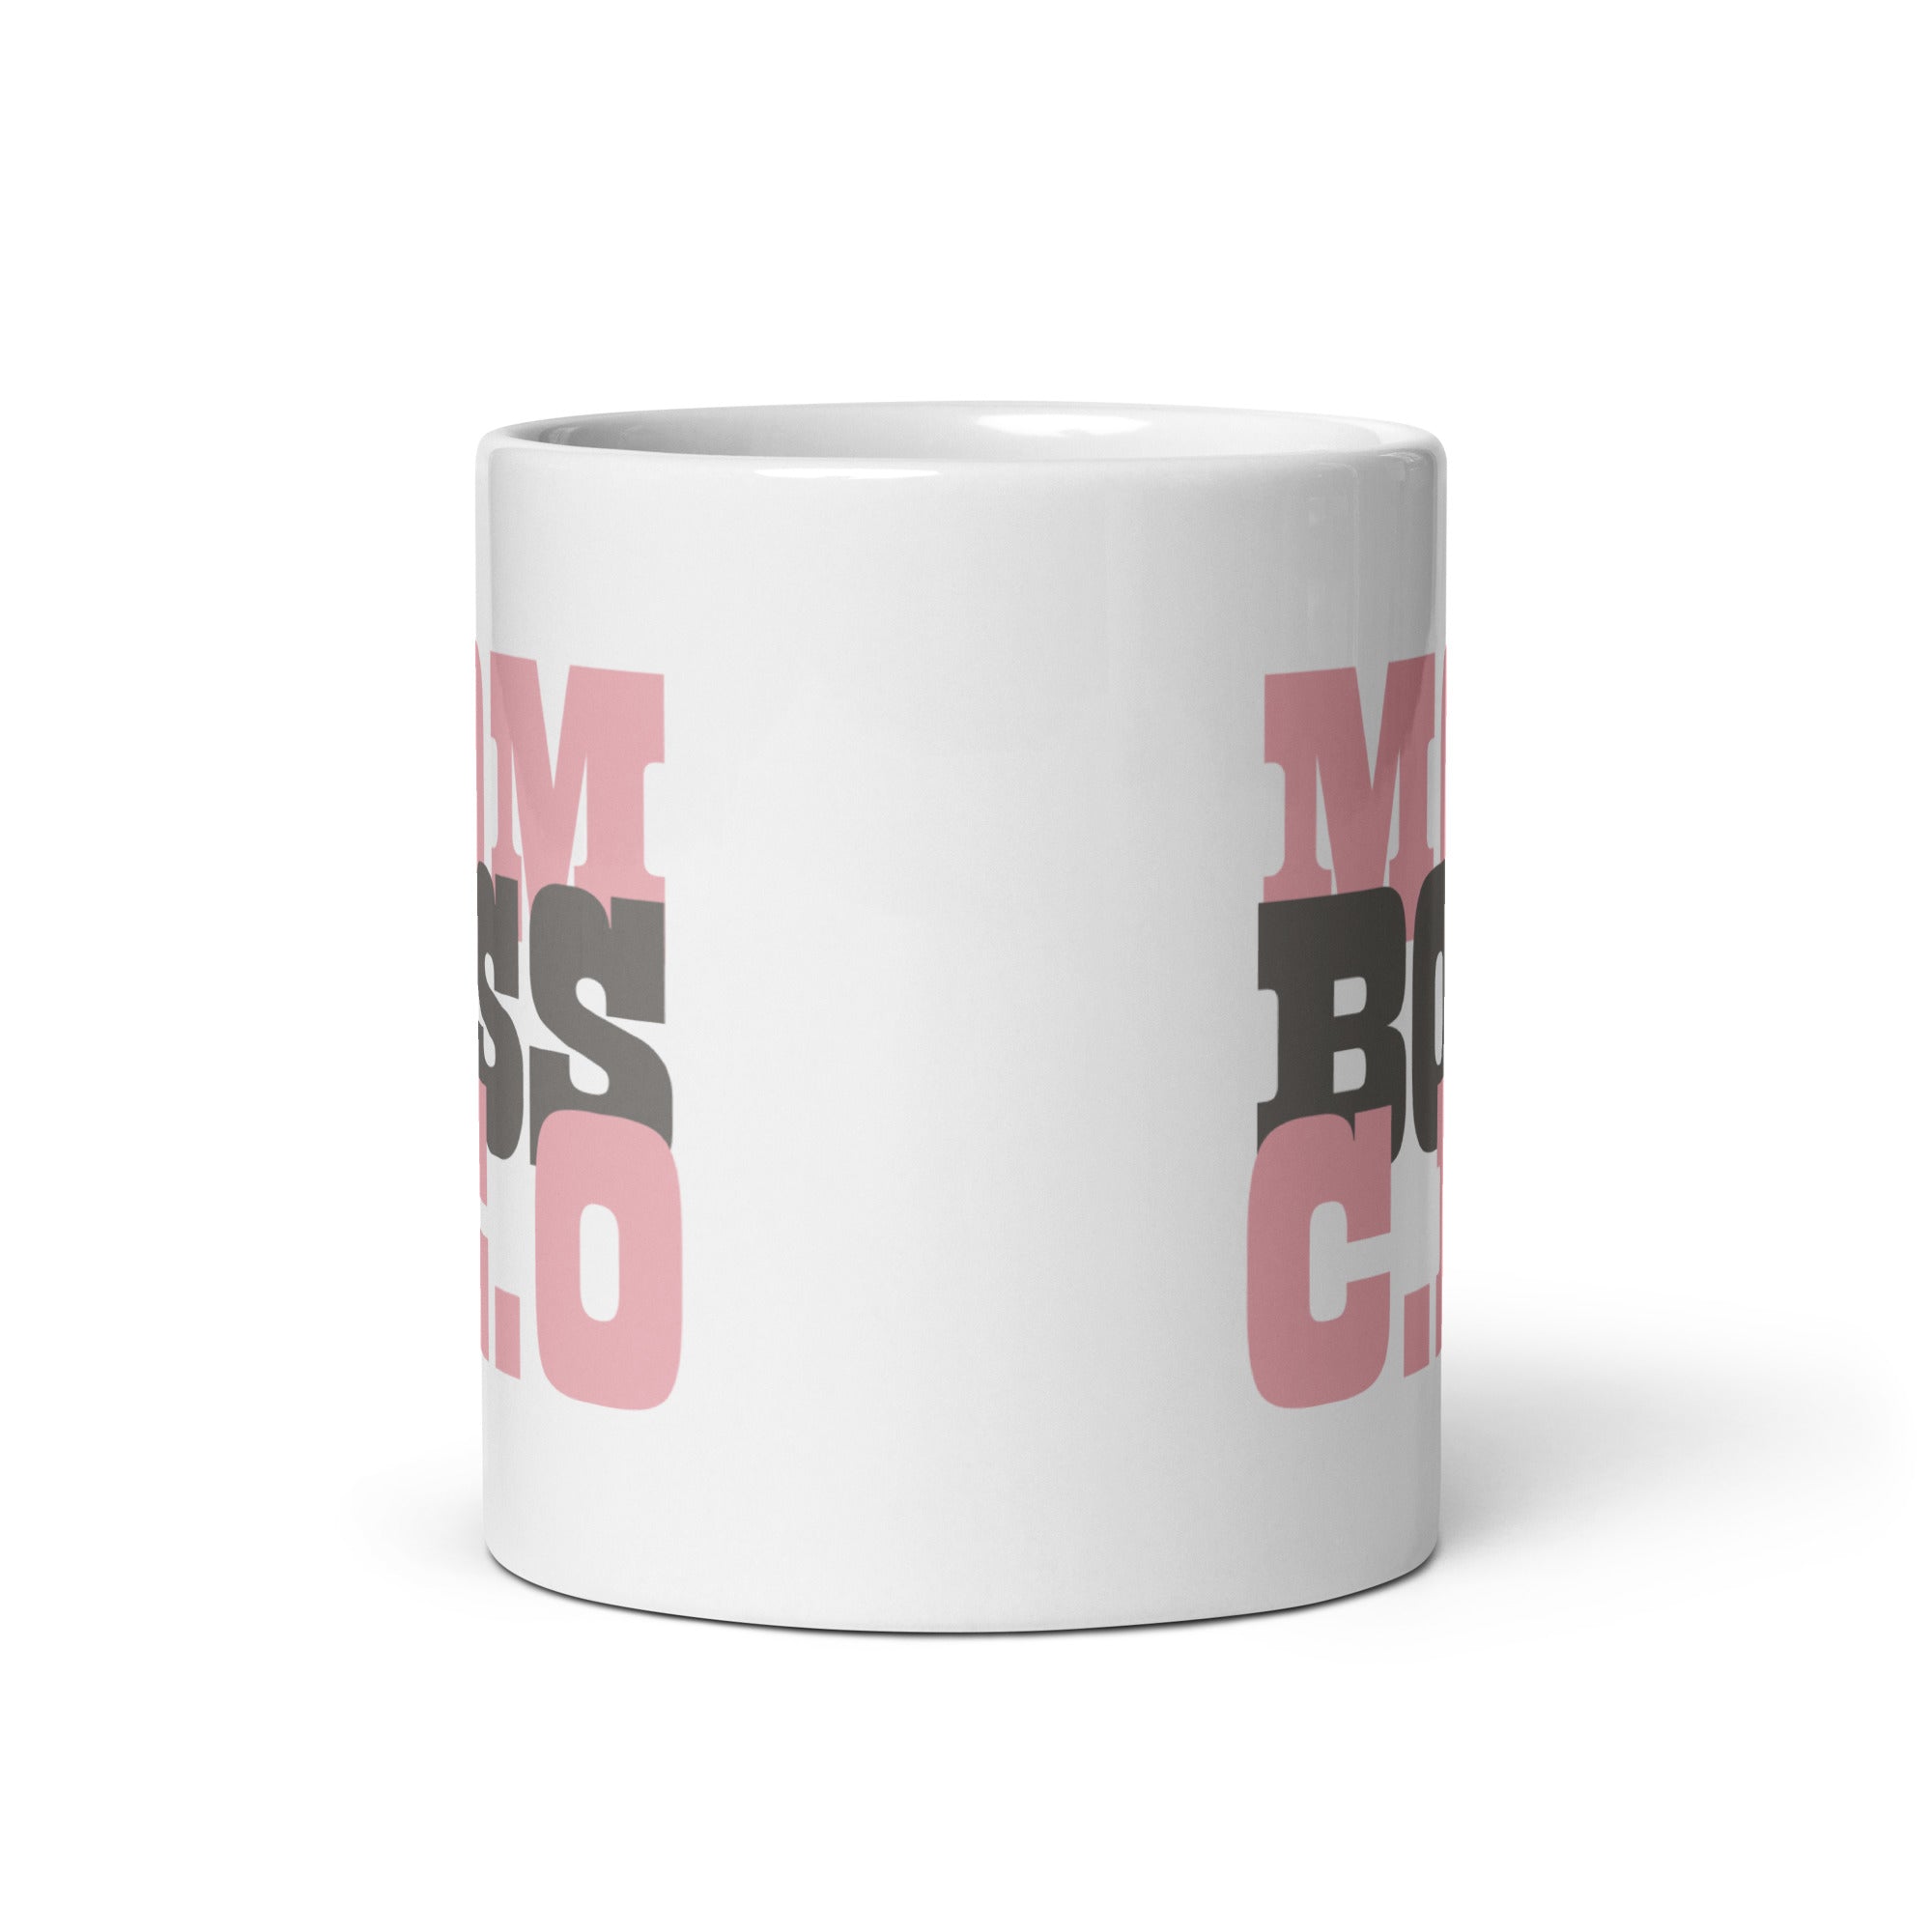 Shop Mom Boss C.E.O Graphic Coffee Mug Cup, Mugs, USA Boutique